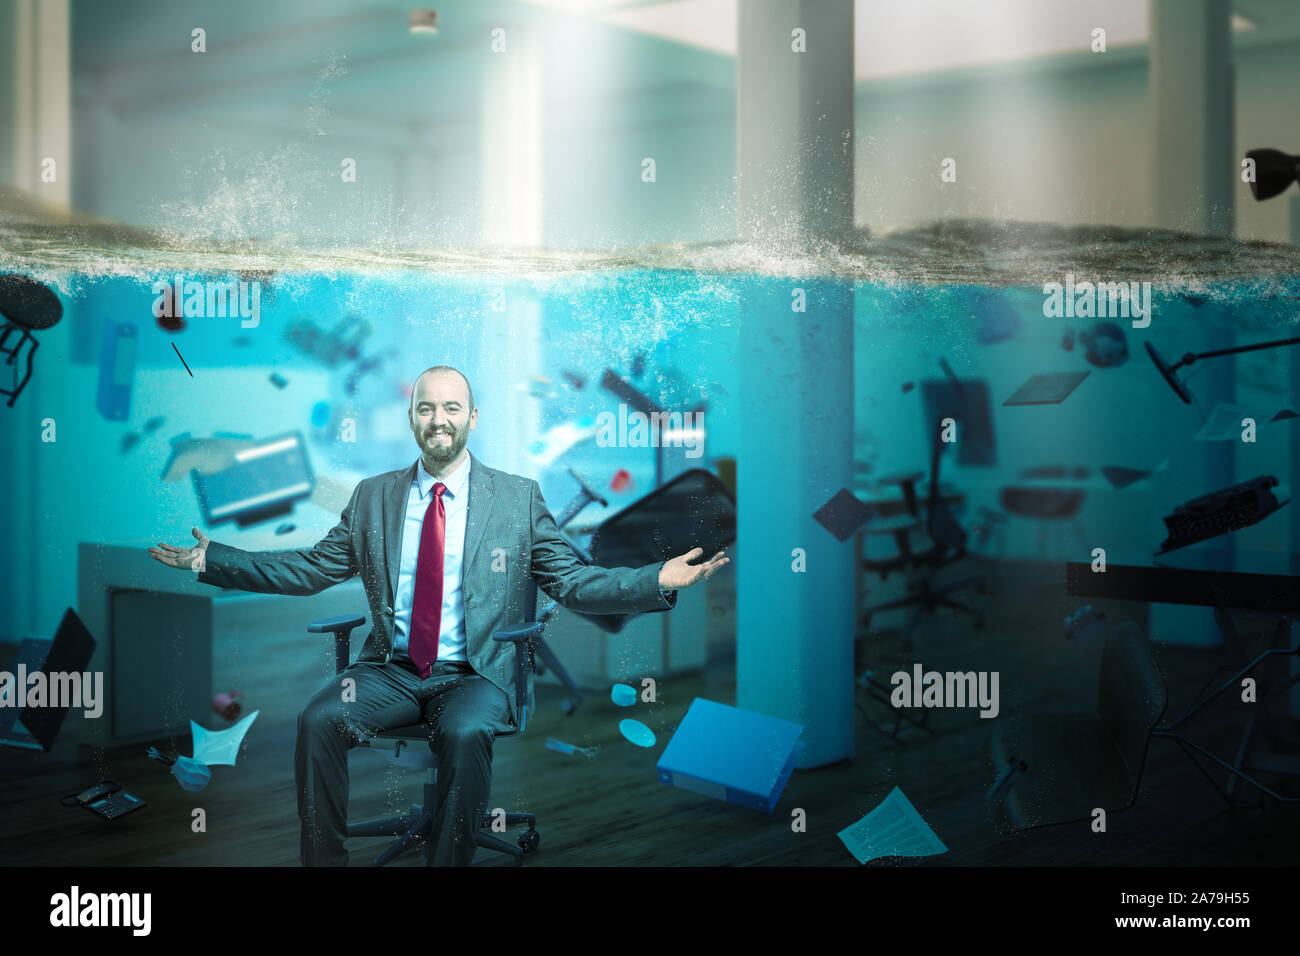 Empresario sonriente sentado en una oficina completamente inundados con objetos que flotan en el agua. Concepto de problemas en el trabajo y una visión positiva. Foto de stock